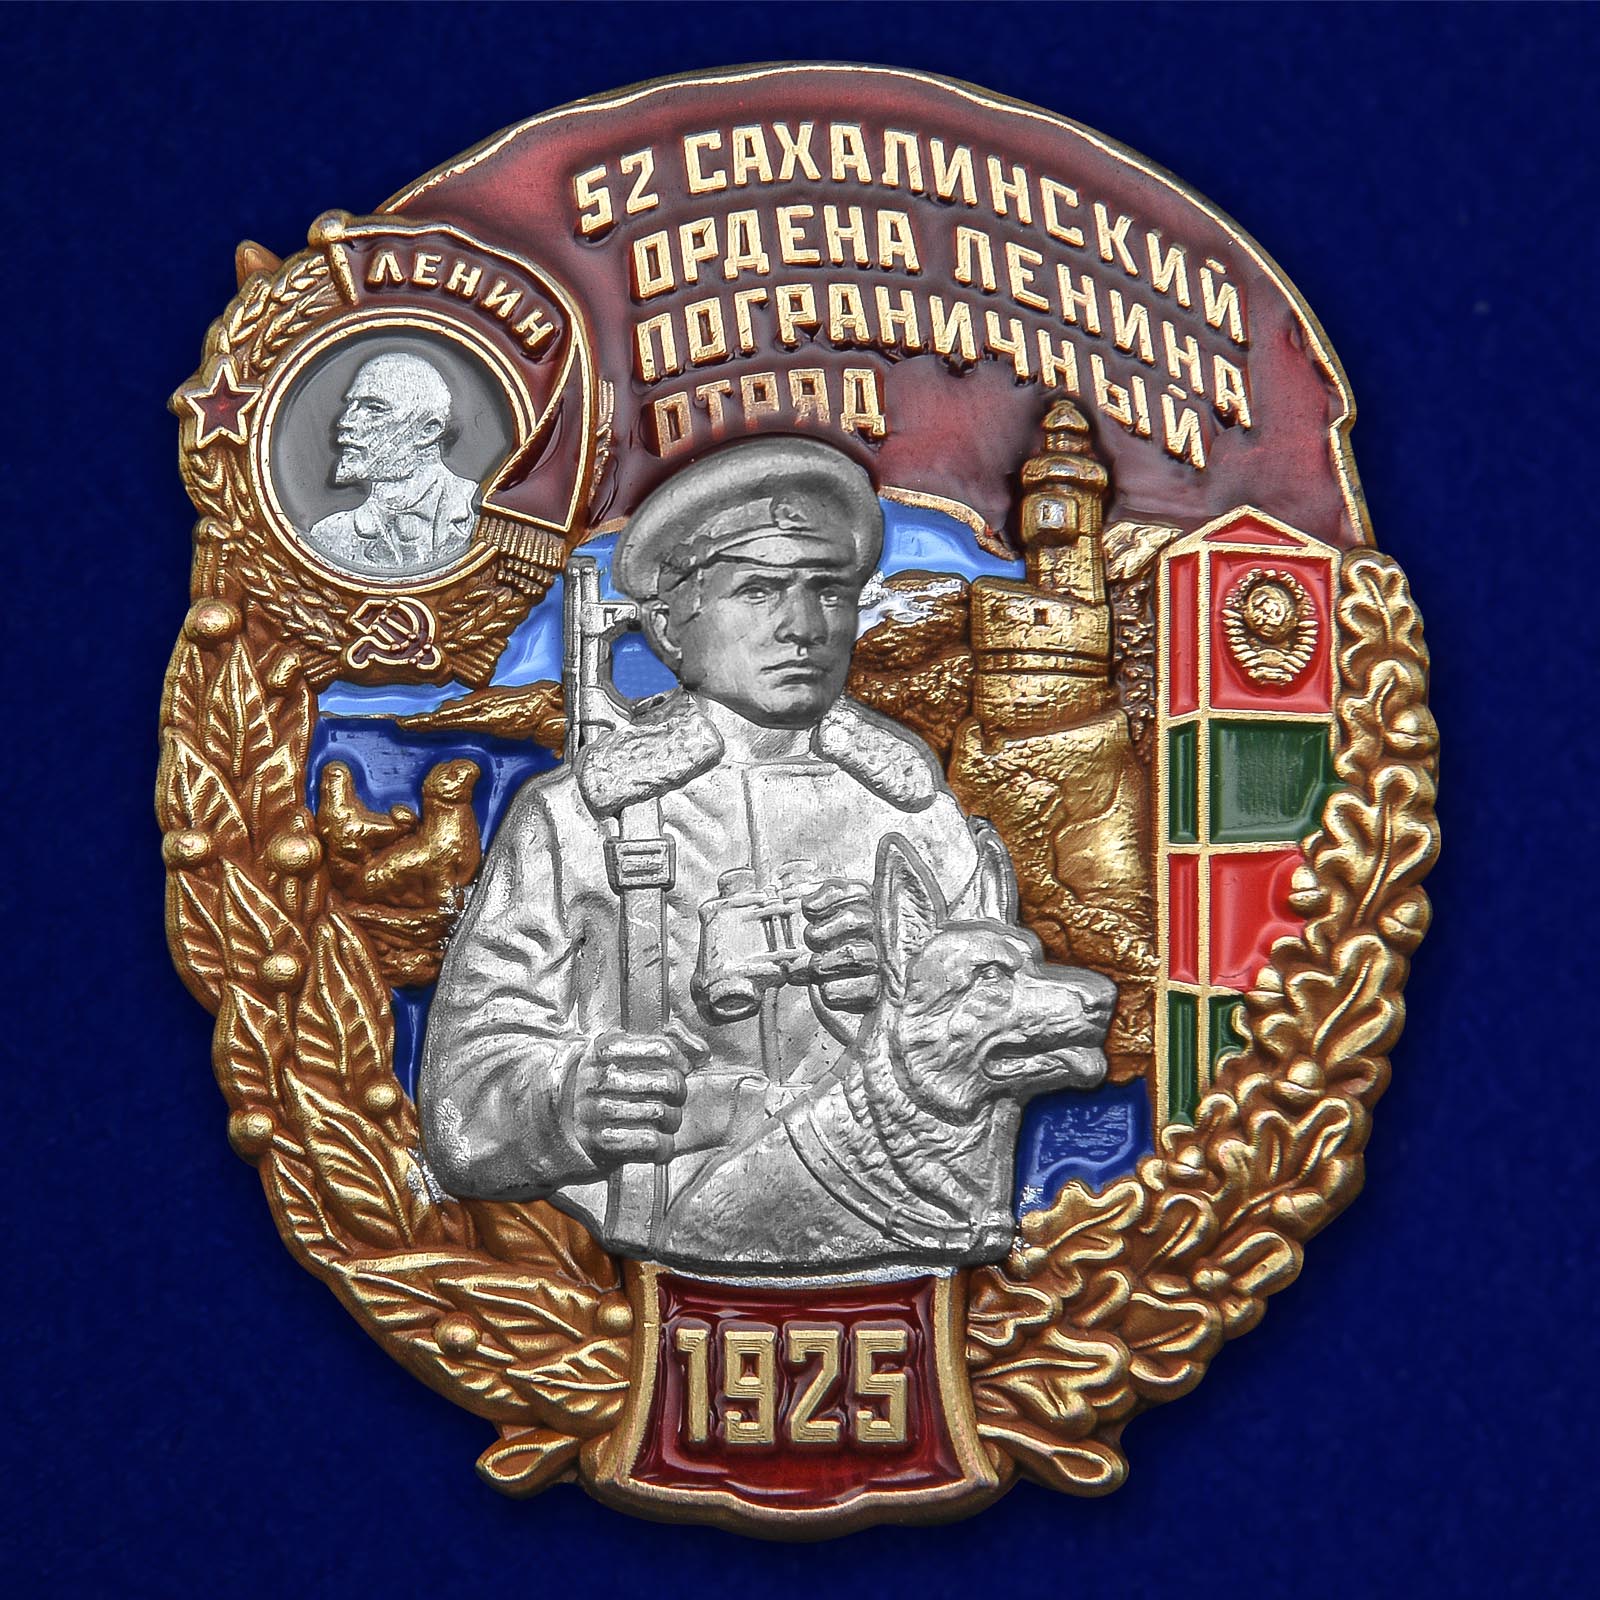 Нагрудный знак "52 Сахалинский ордена Ленина Пограничный отряд" 